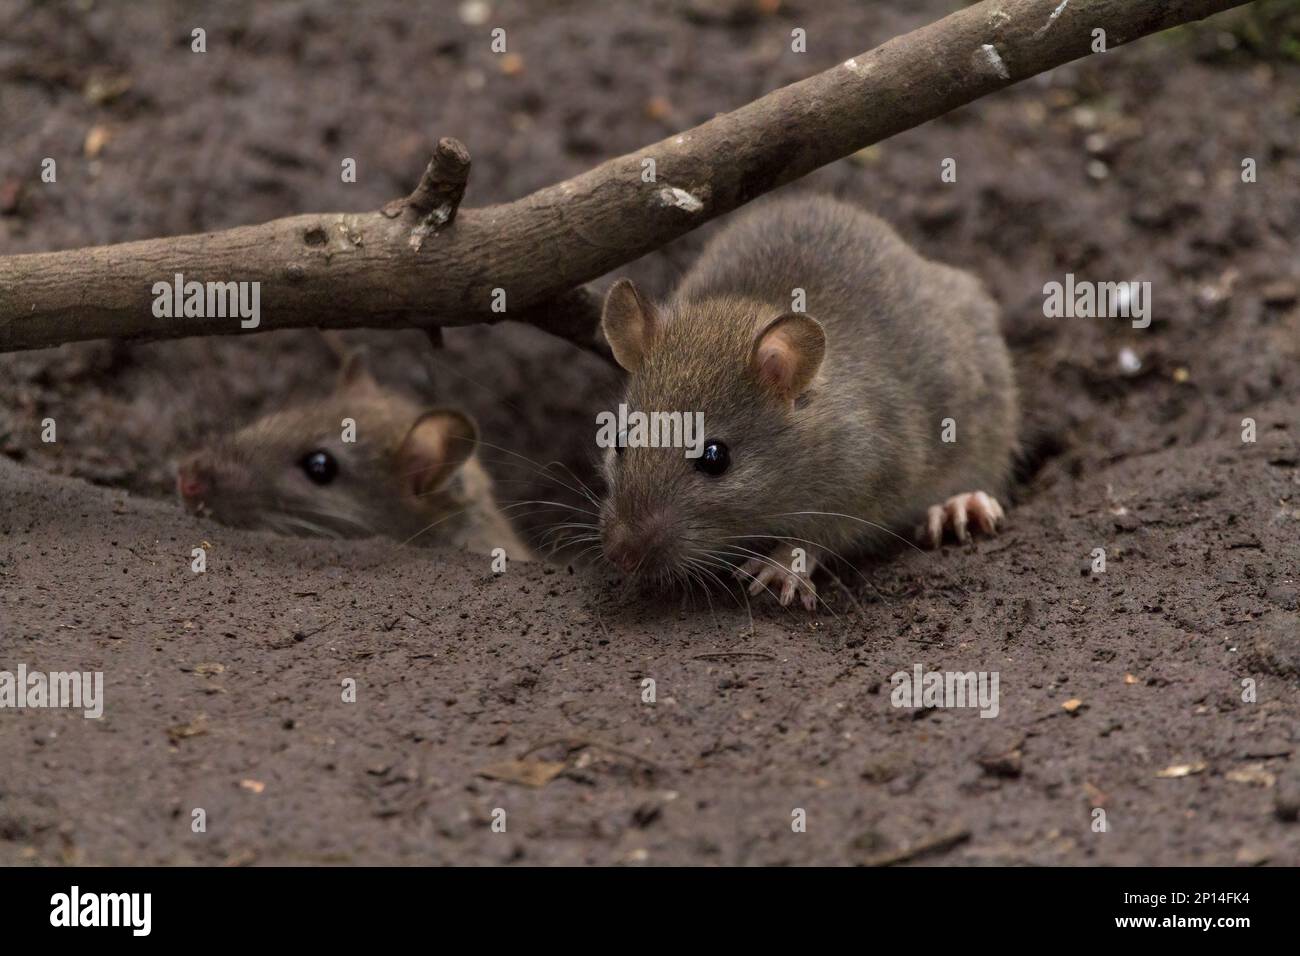 Rattus norvegicus brun de rat, fourrure grise brunâtre grossière petites oreilles à poil fin épais queue effilée squameuse longue fouets quatre orteils avant cinq orteils arrière Banque D'Images